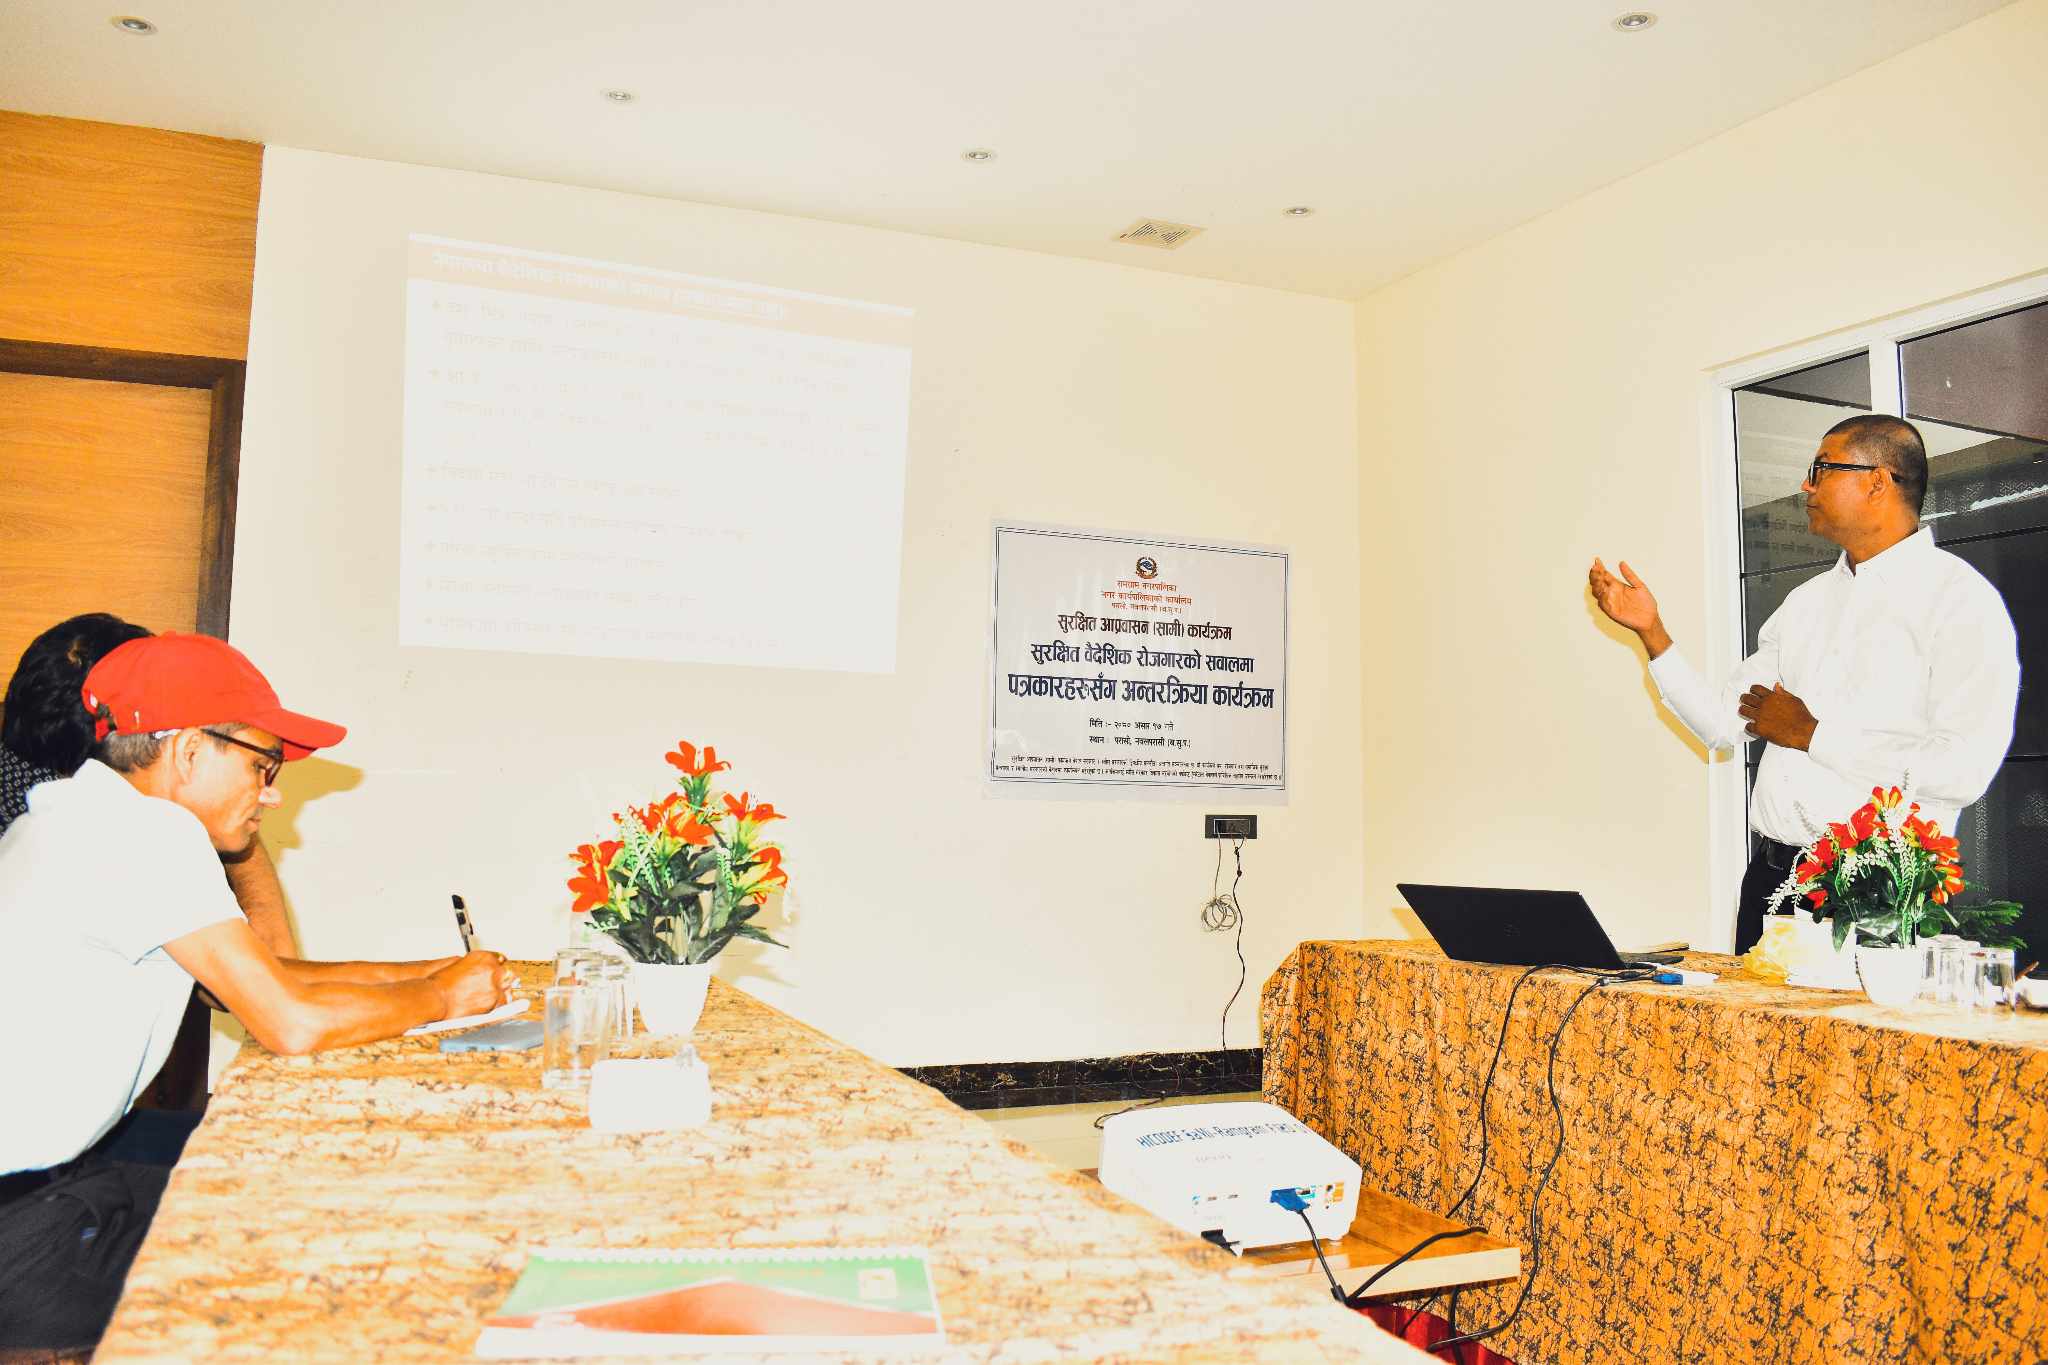 श्रम स्वीकृत गरेर विदेश जानेकाे संख्यामा लुम्बिनी प्रदेशमा नवलपरासी पहिलाे  / जिल्लाका ४ पालिकामा मात्र सामी कार्यक्रम संचालन